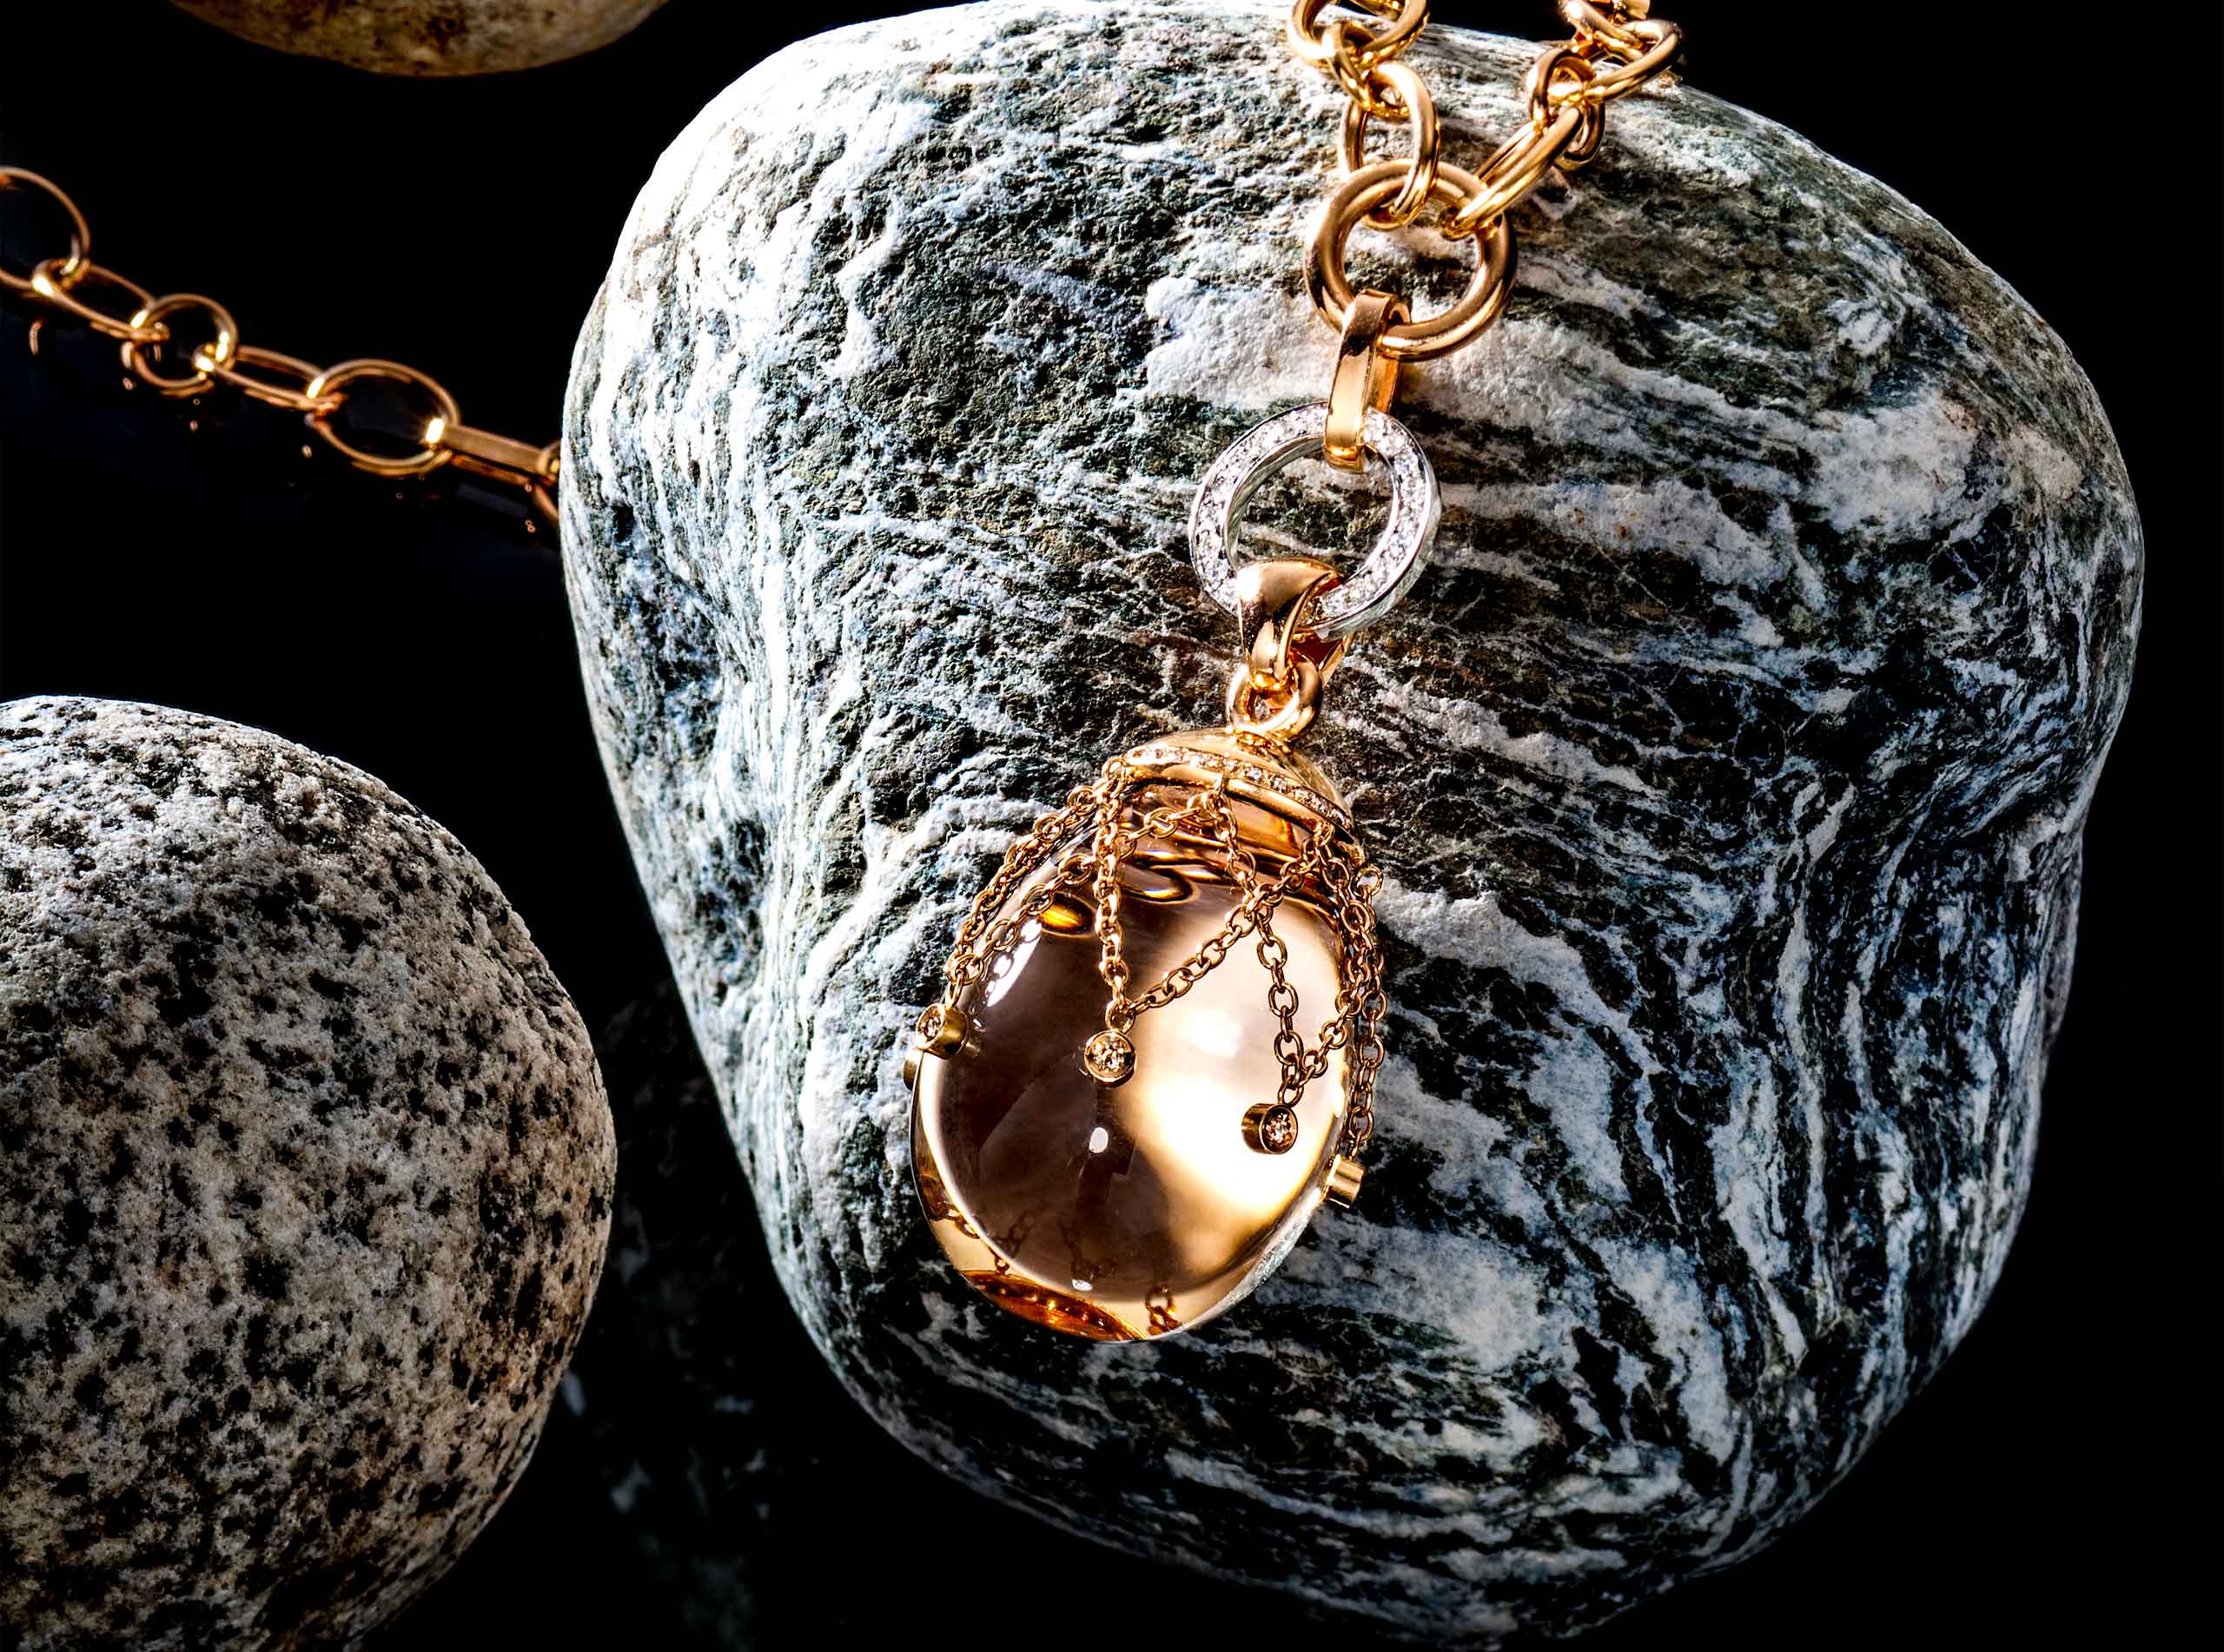 צילום תכשיט שרשרת זהב עם תליון זהב על אבן שקופה עם יהלומים על חלוק נחל על רקע שחור משתקף